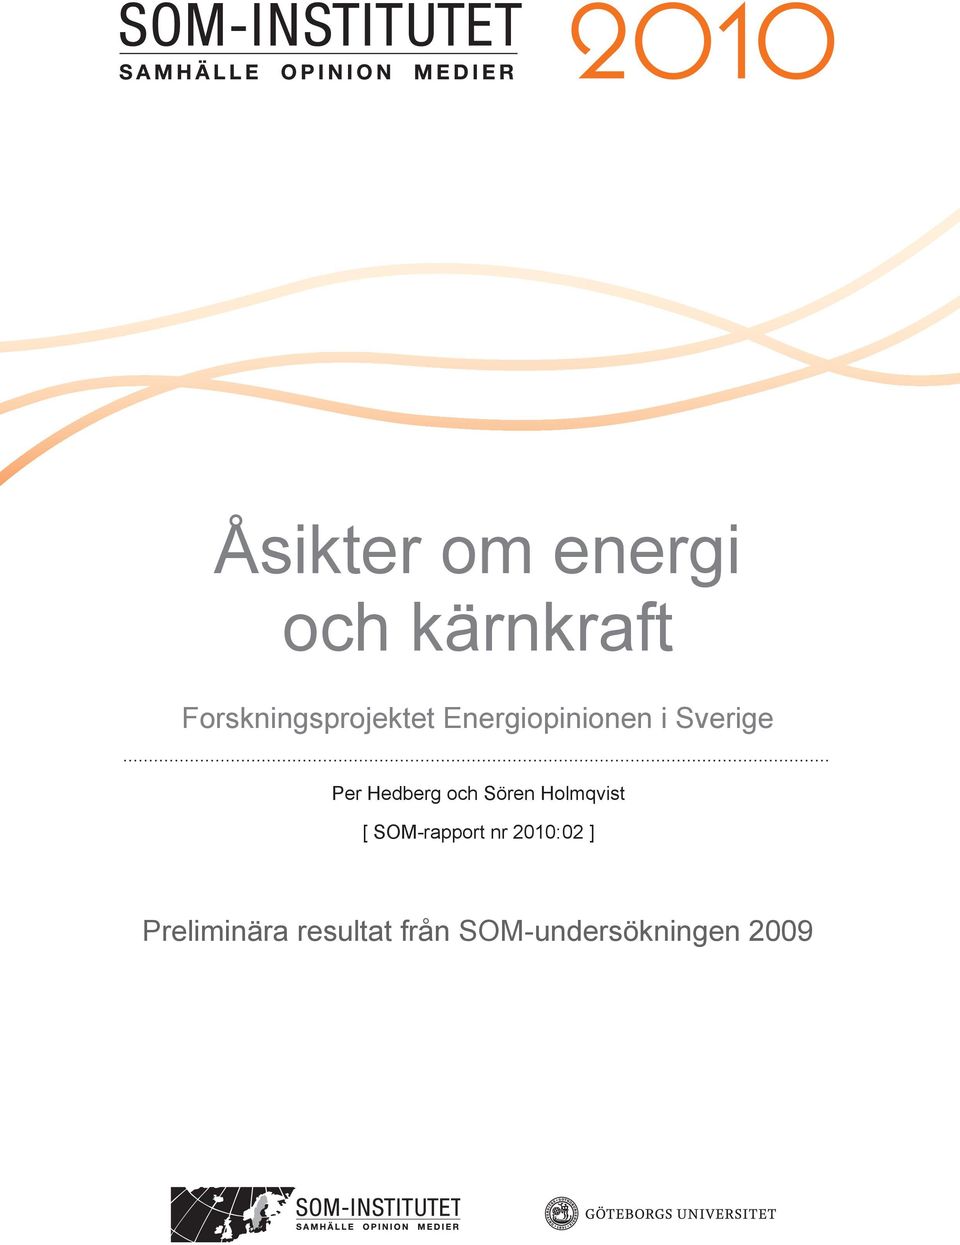 Per Hedberg och Sören Holmqvist [ SOM-rapport